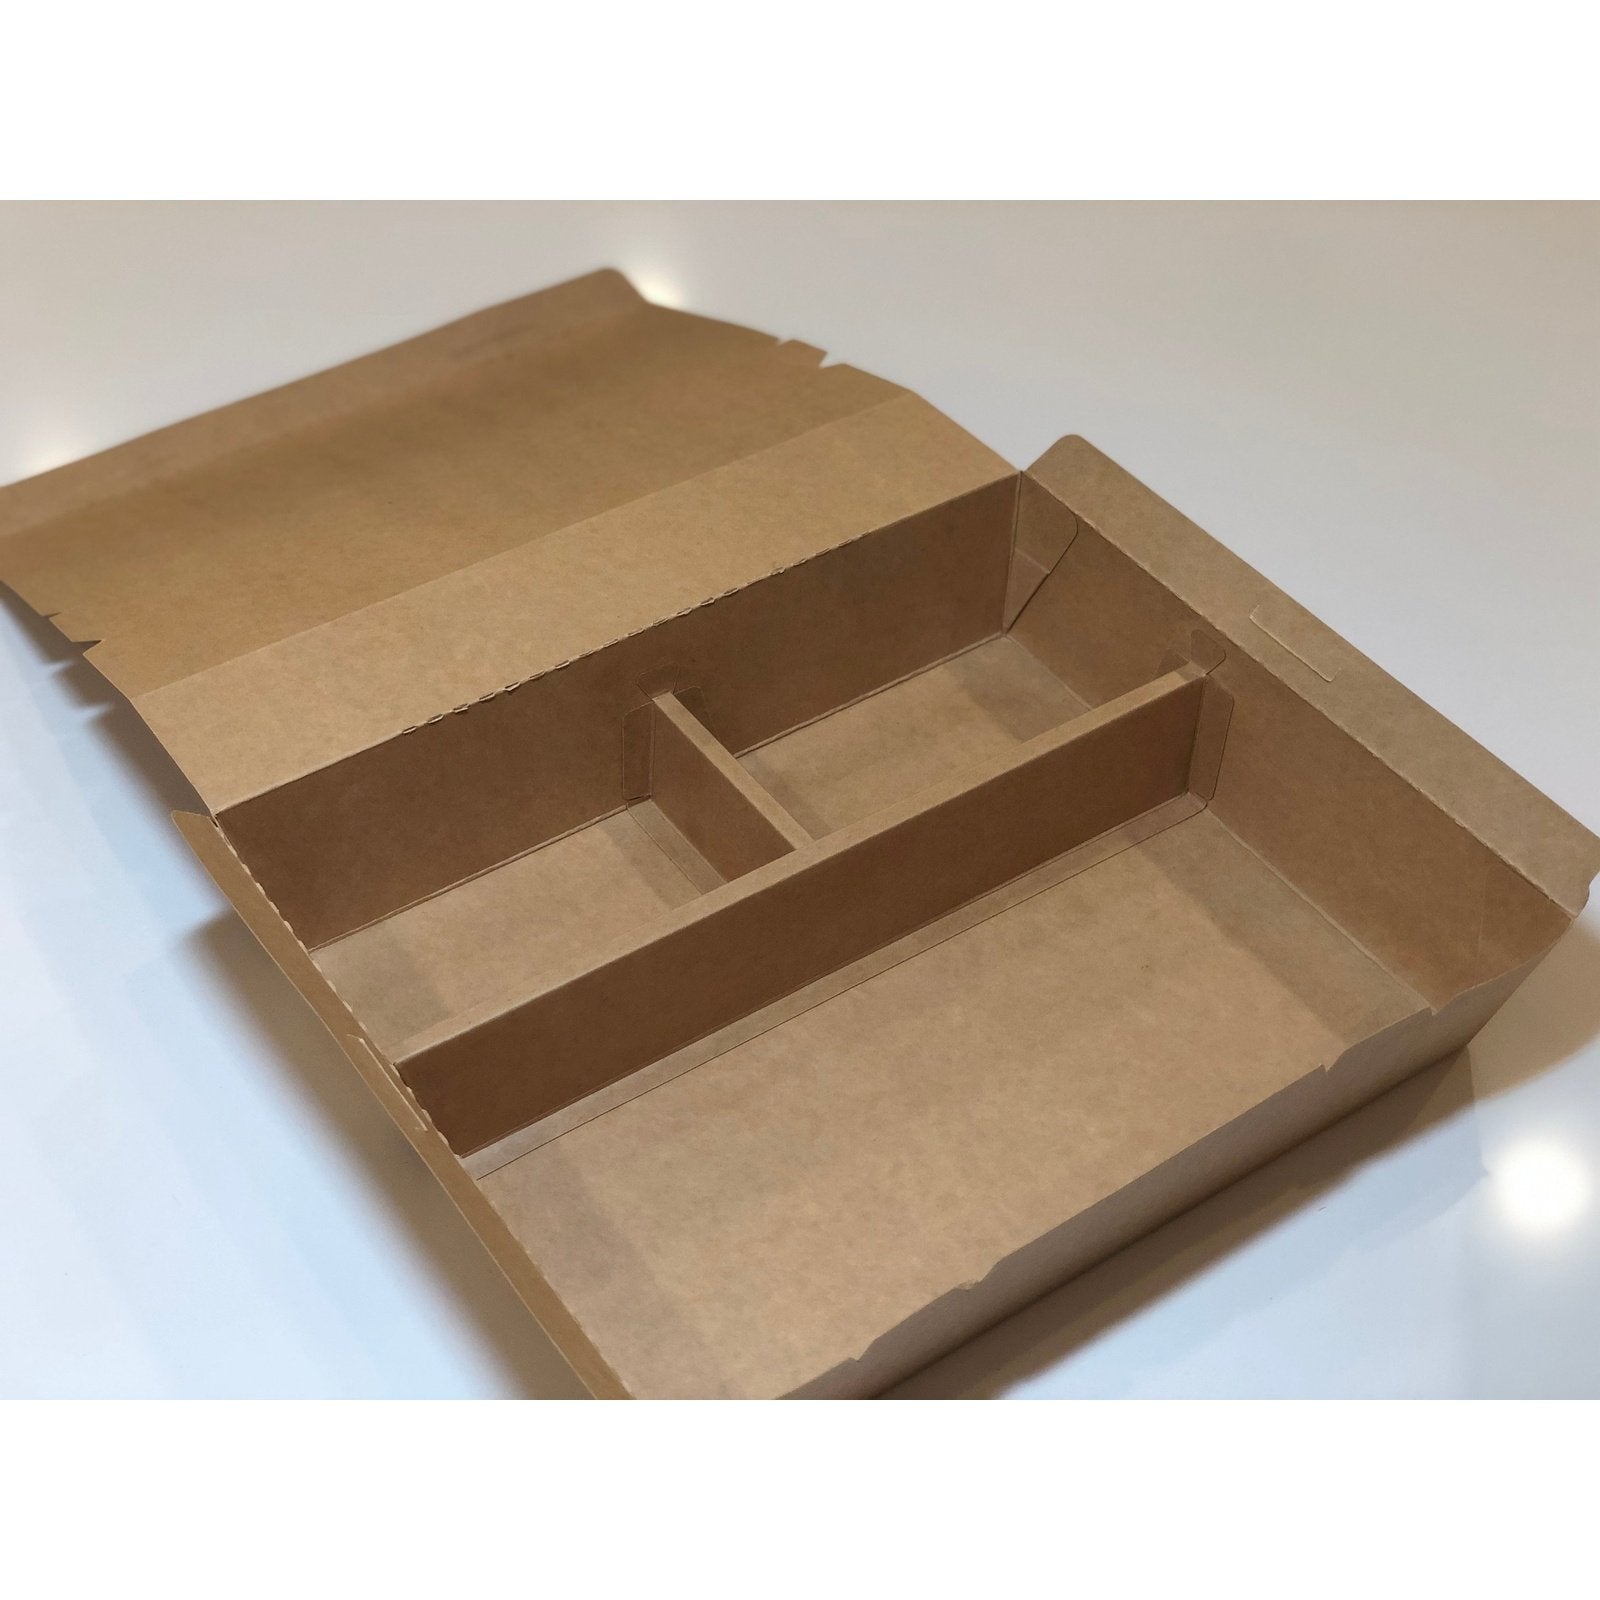  Bento Boxes, Pyrex, 3.4 Quart Bento Box